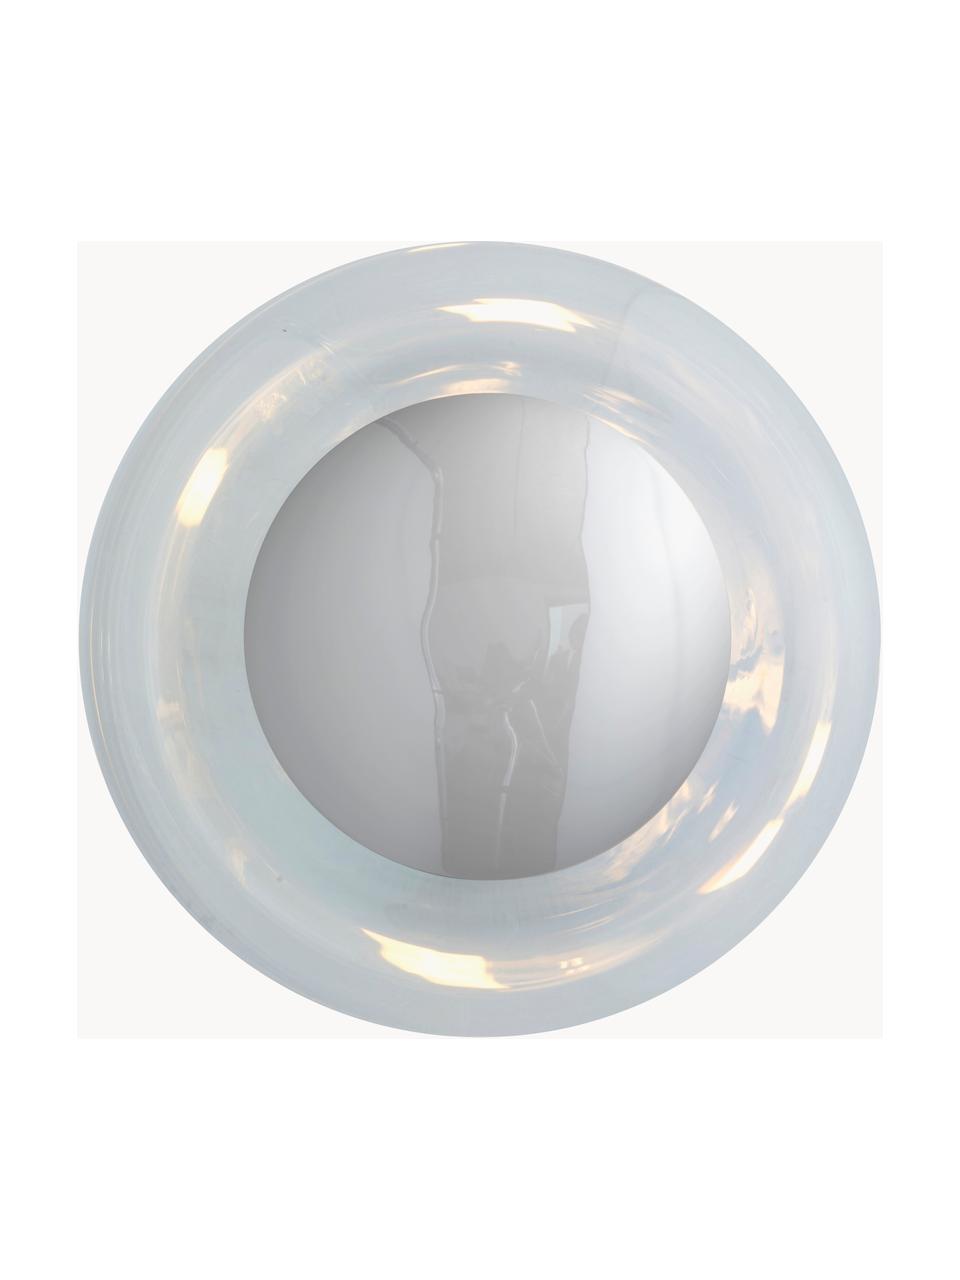 Lampa sufitowa ze szkła dmuchanego Horizon, Stelaż: metal powlekany, Transparentny, odcienie srebrnego, Ø 21 x G 17 cm